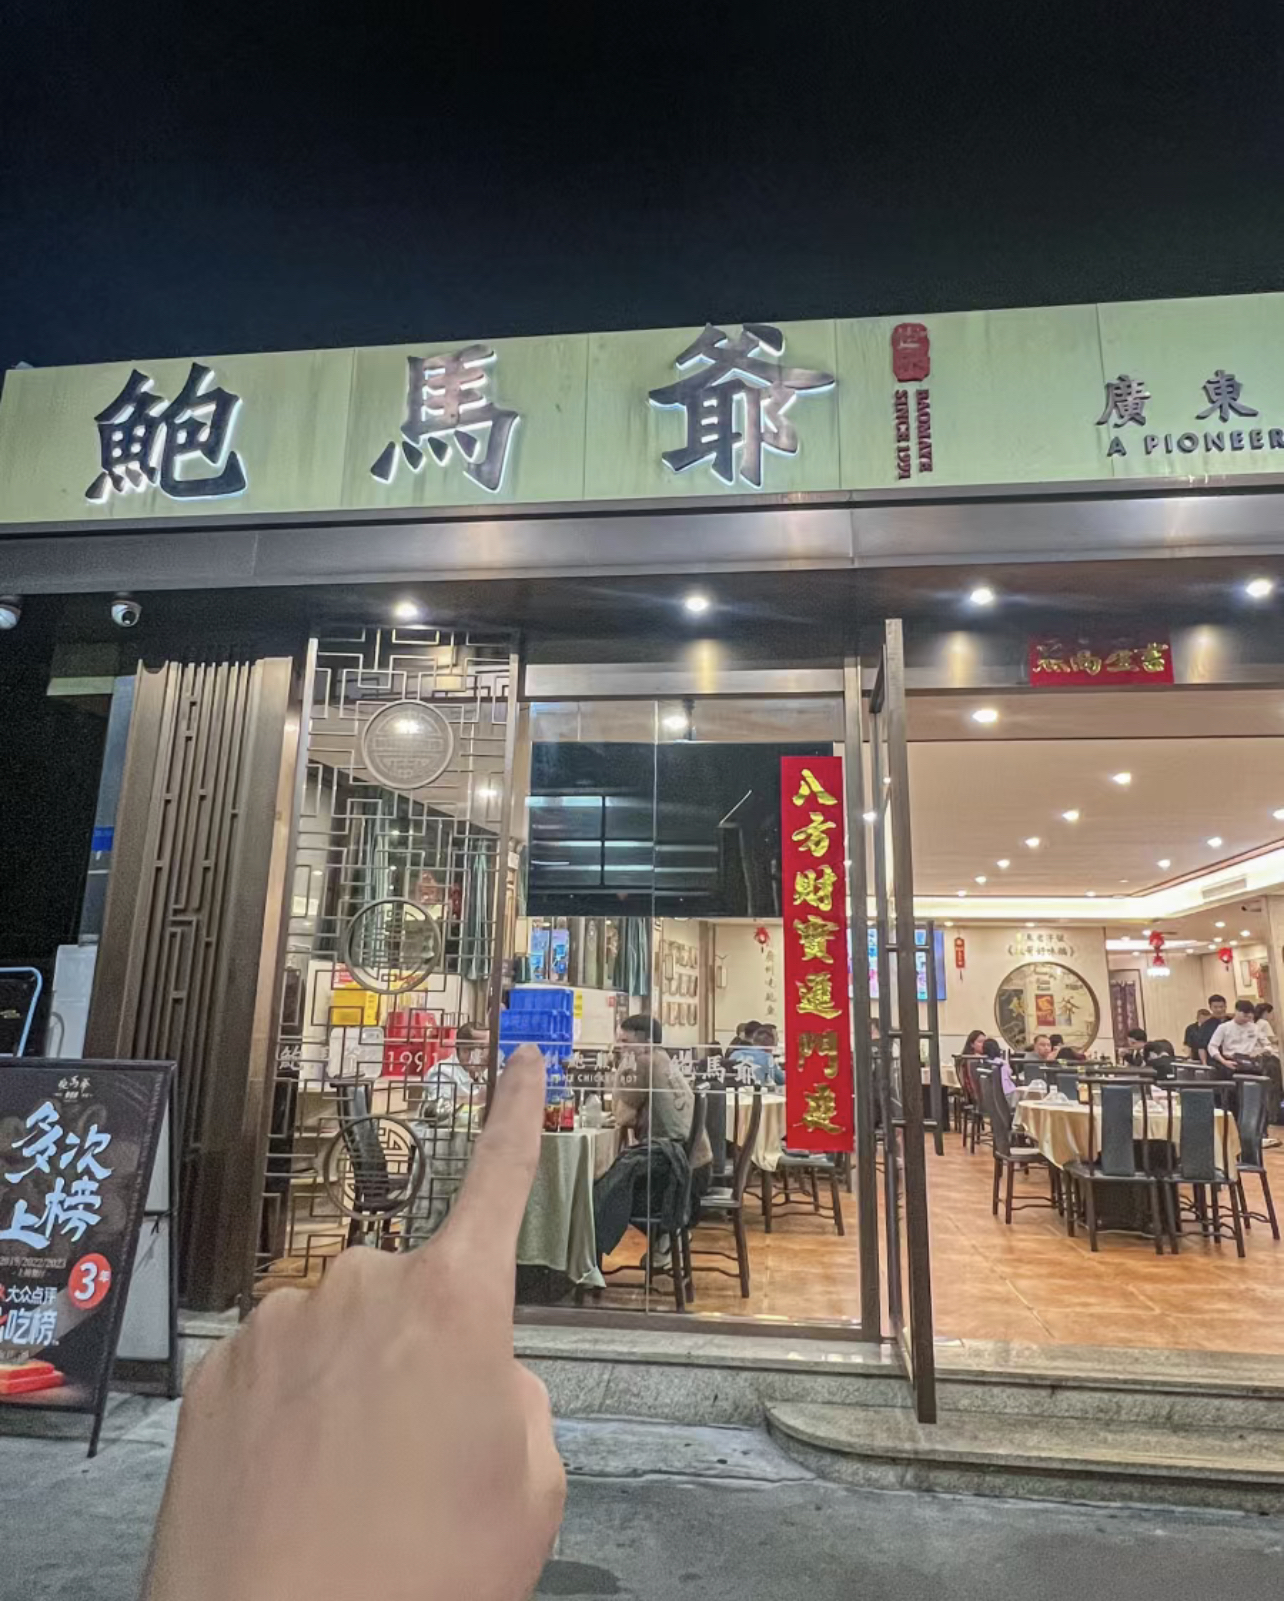 在广州!吃过一次就念念不忘的饭店。。本地人才知道!开了33年的老店贼好吃了这个天气吃上热腾腾的鸡煲好